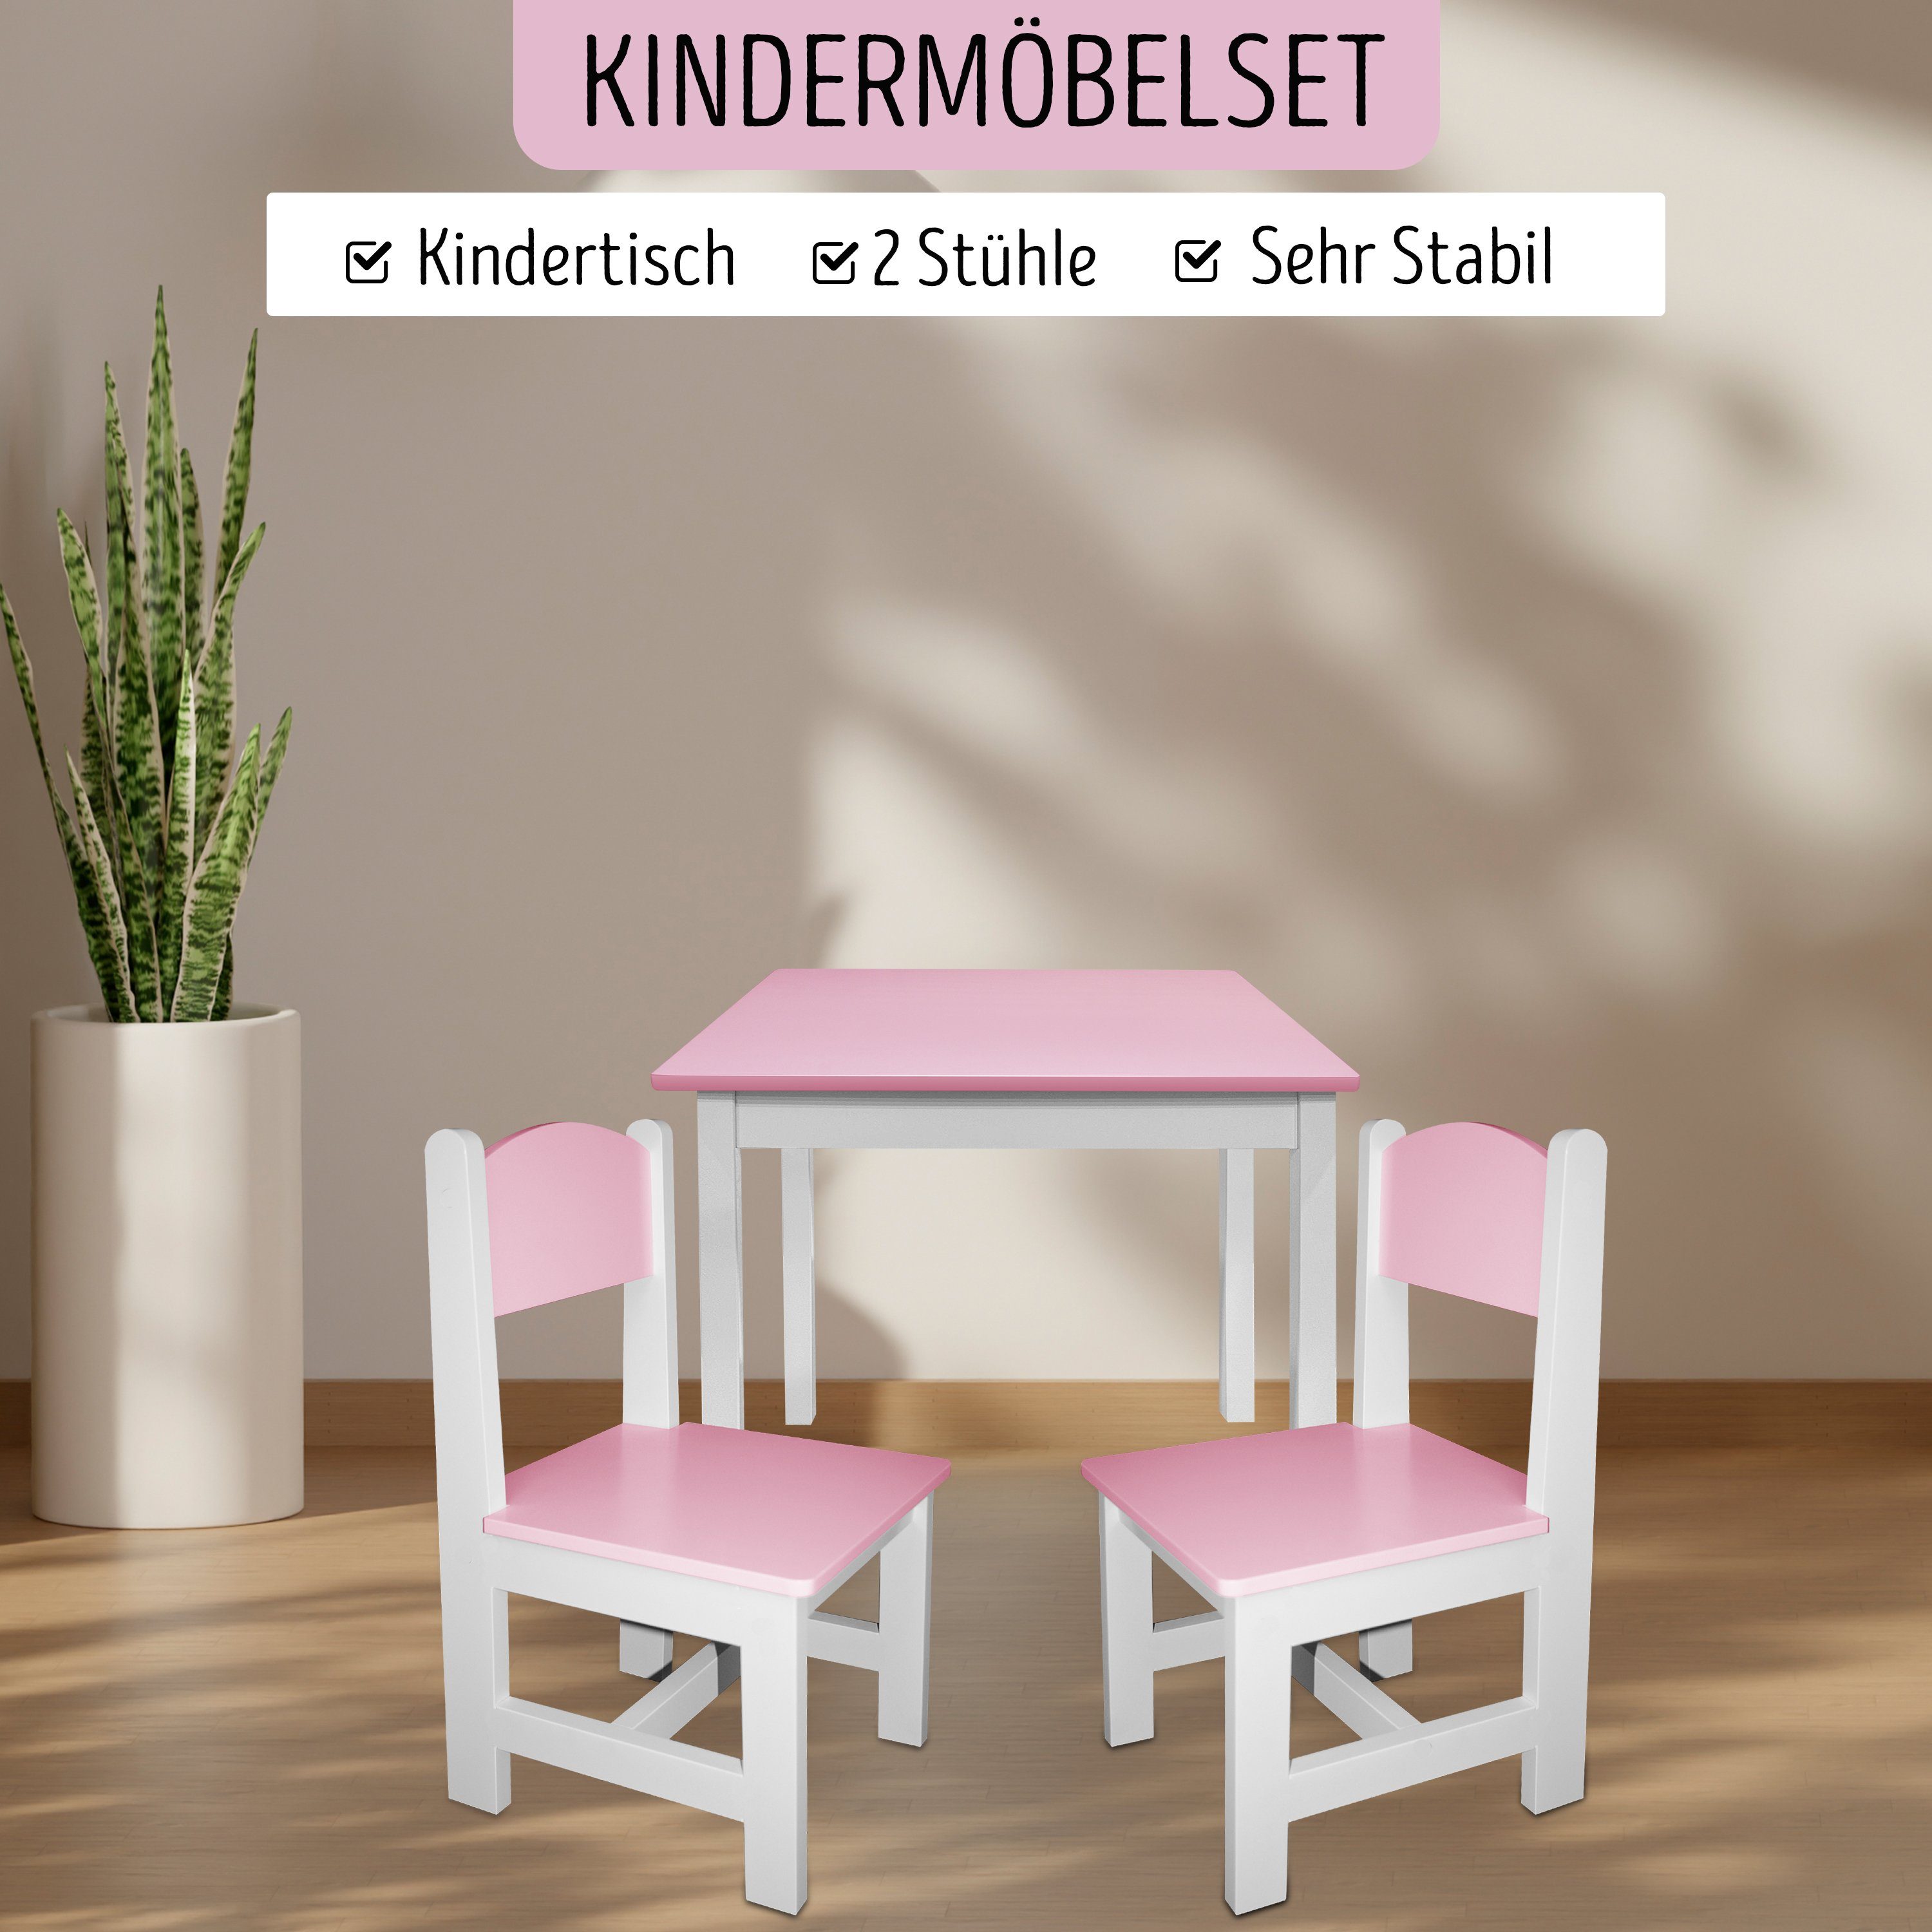 Kindersitzgruppe habeig Kindertisch 60x50x50cm 2 Maltisch & Hocker Kindermöbelset Stühle Rosa+Weiß